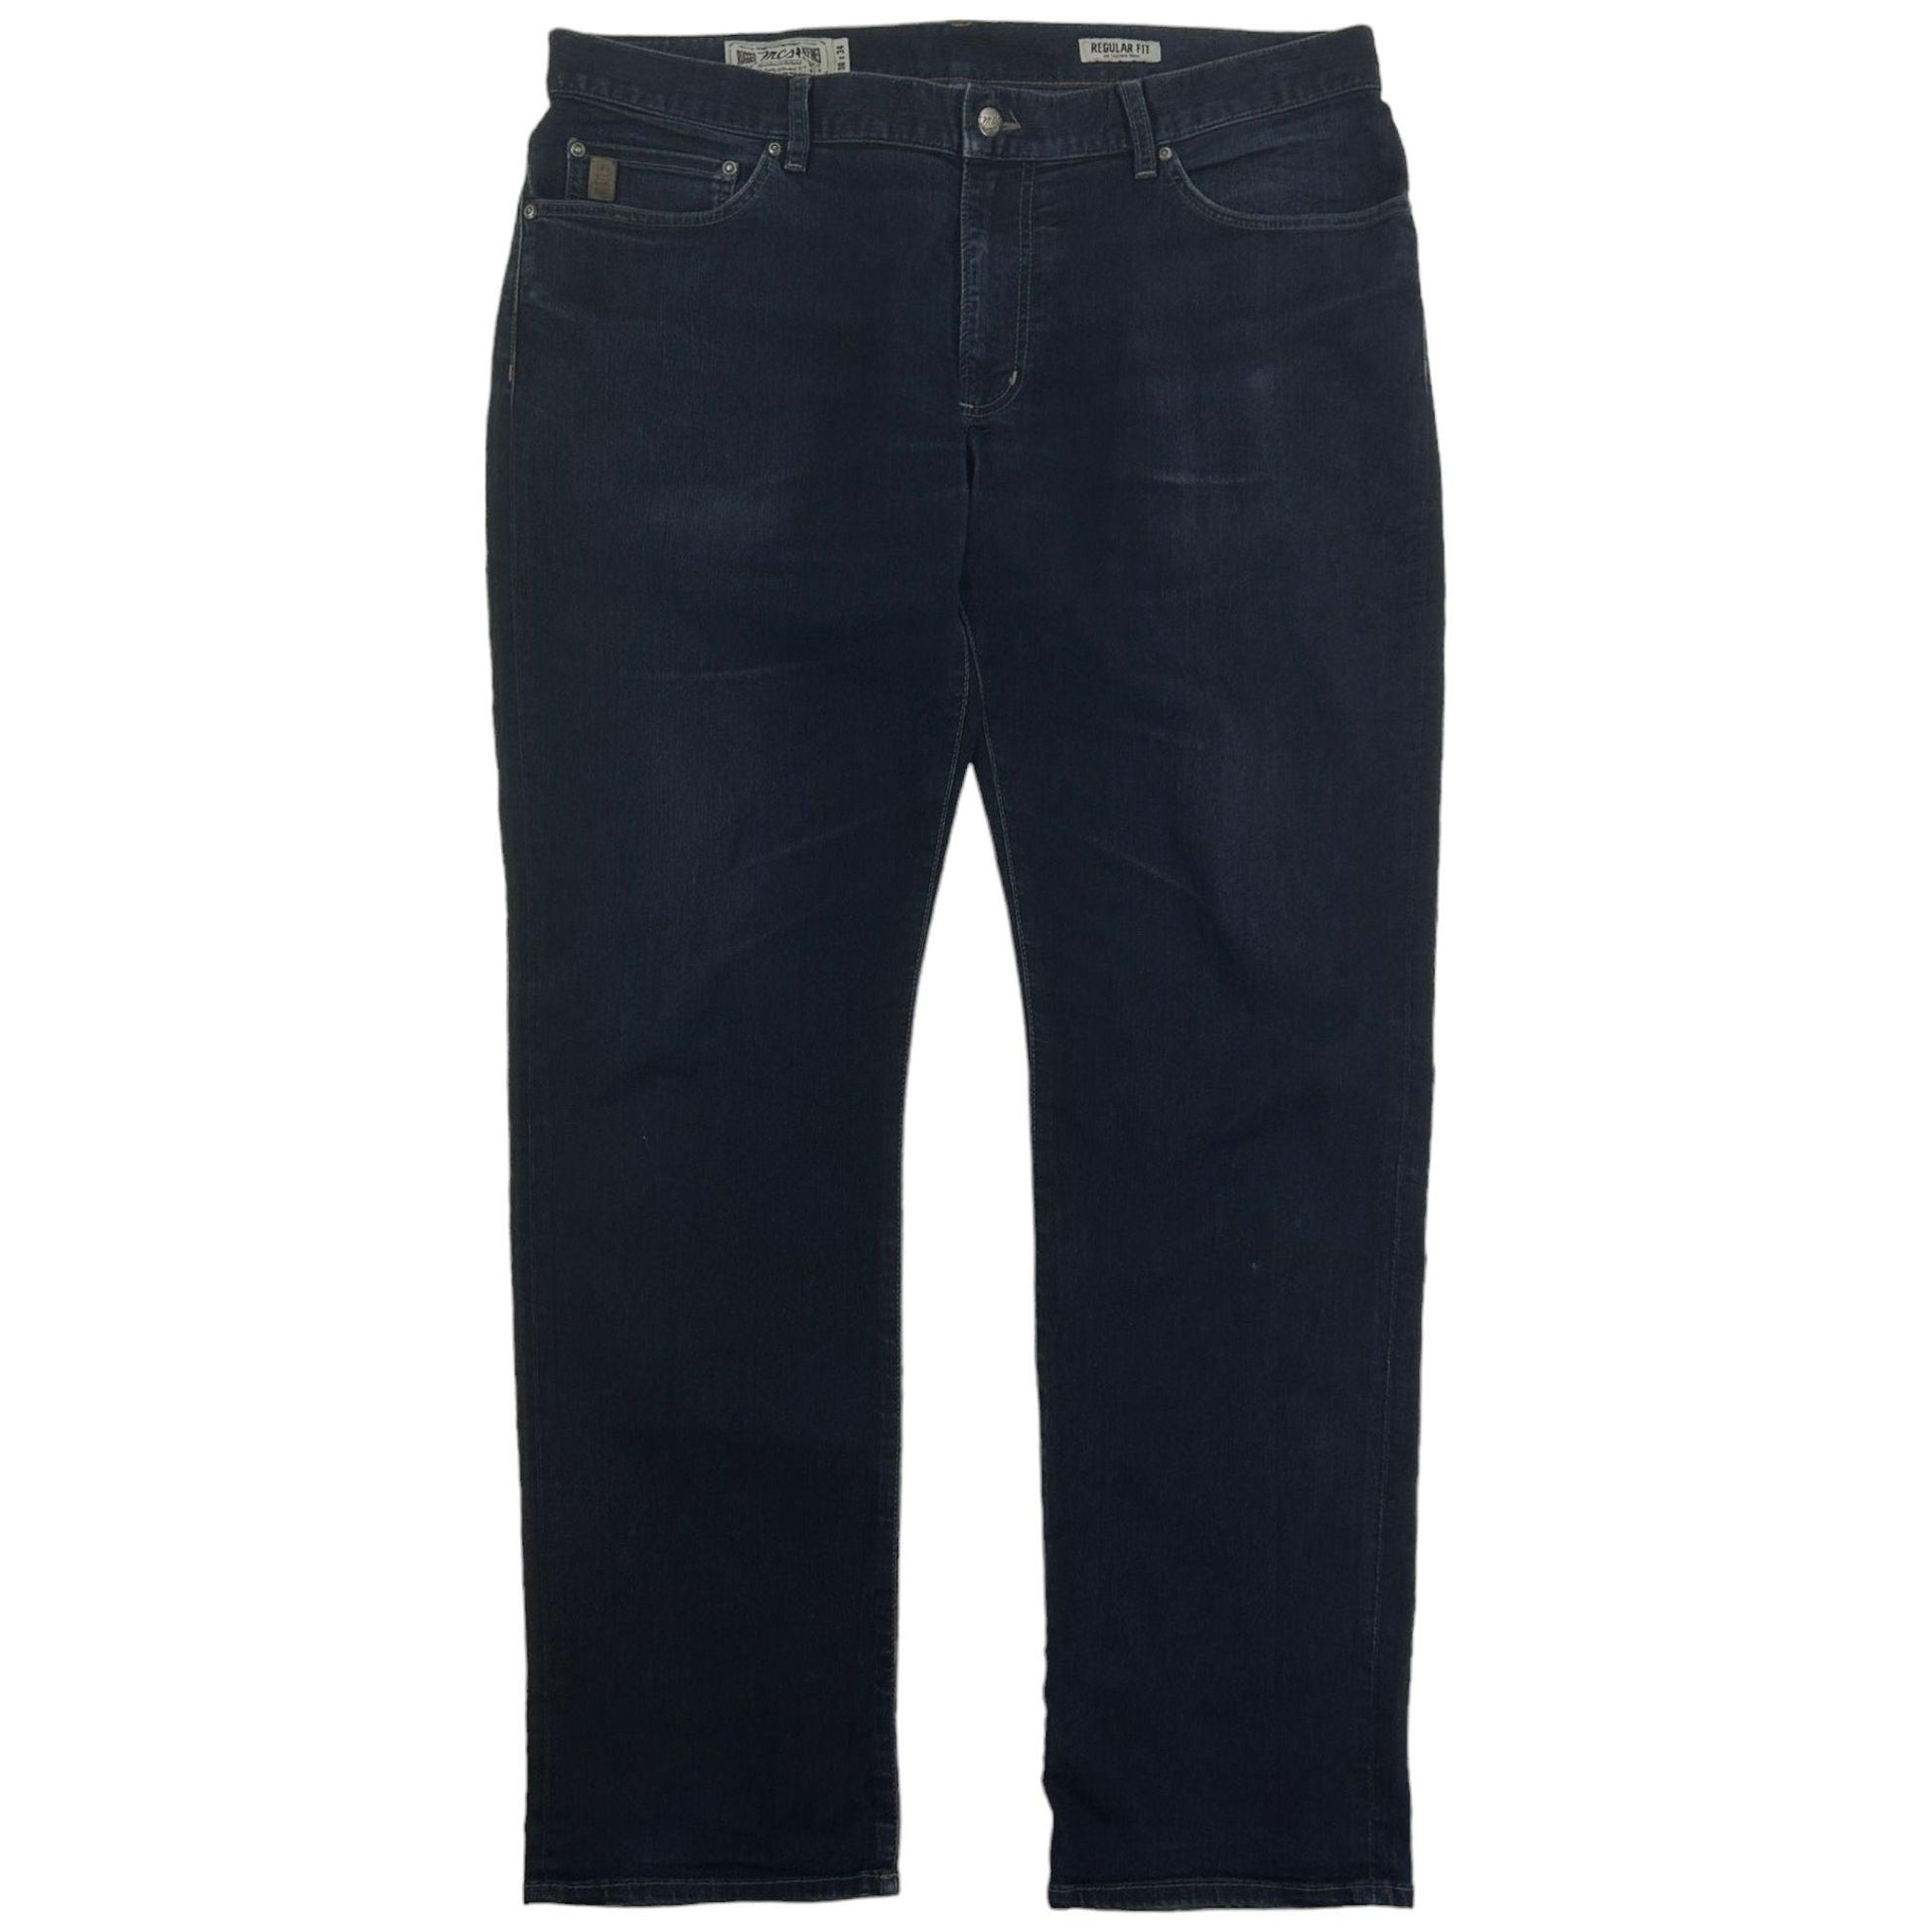 Vintage Marlboro Denim Jeans Size W40 - Known Source